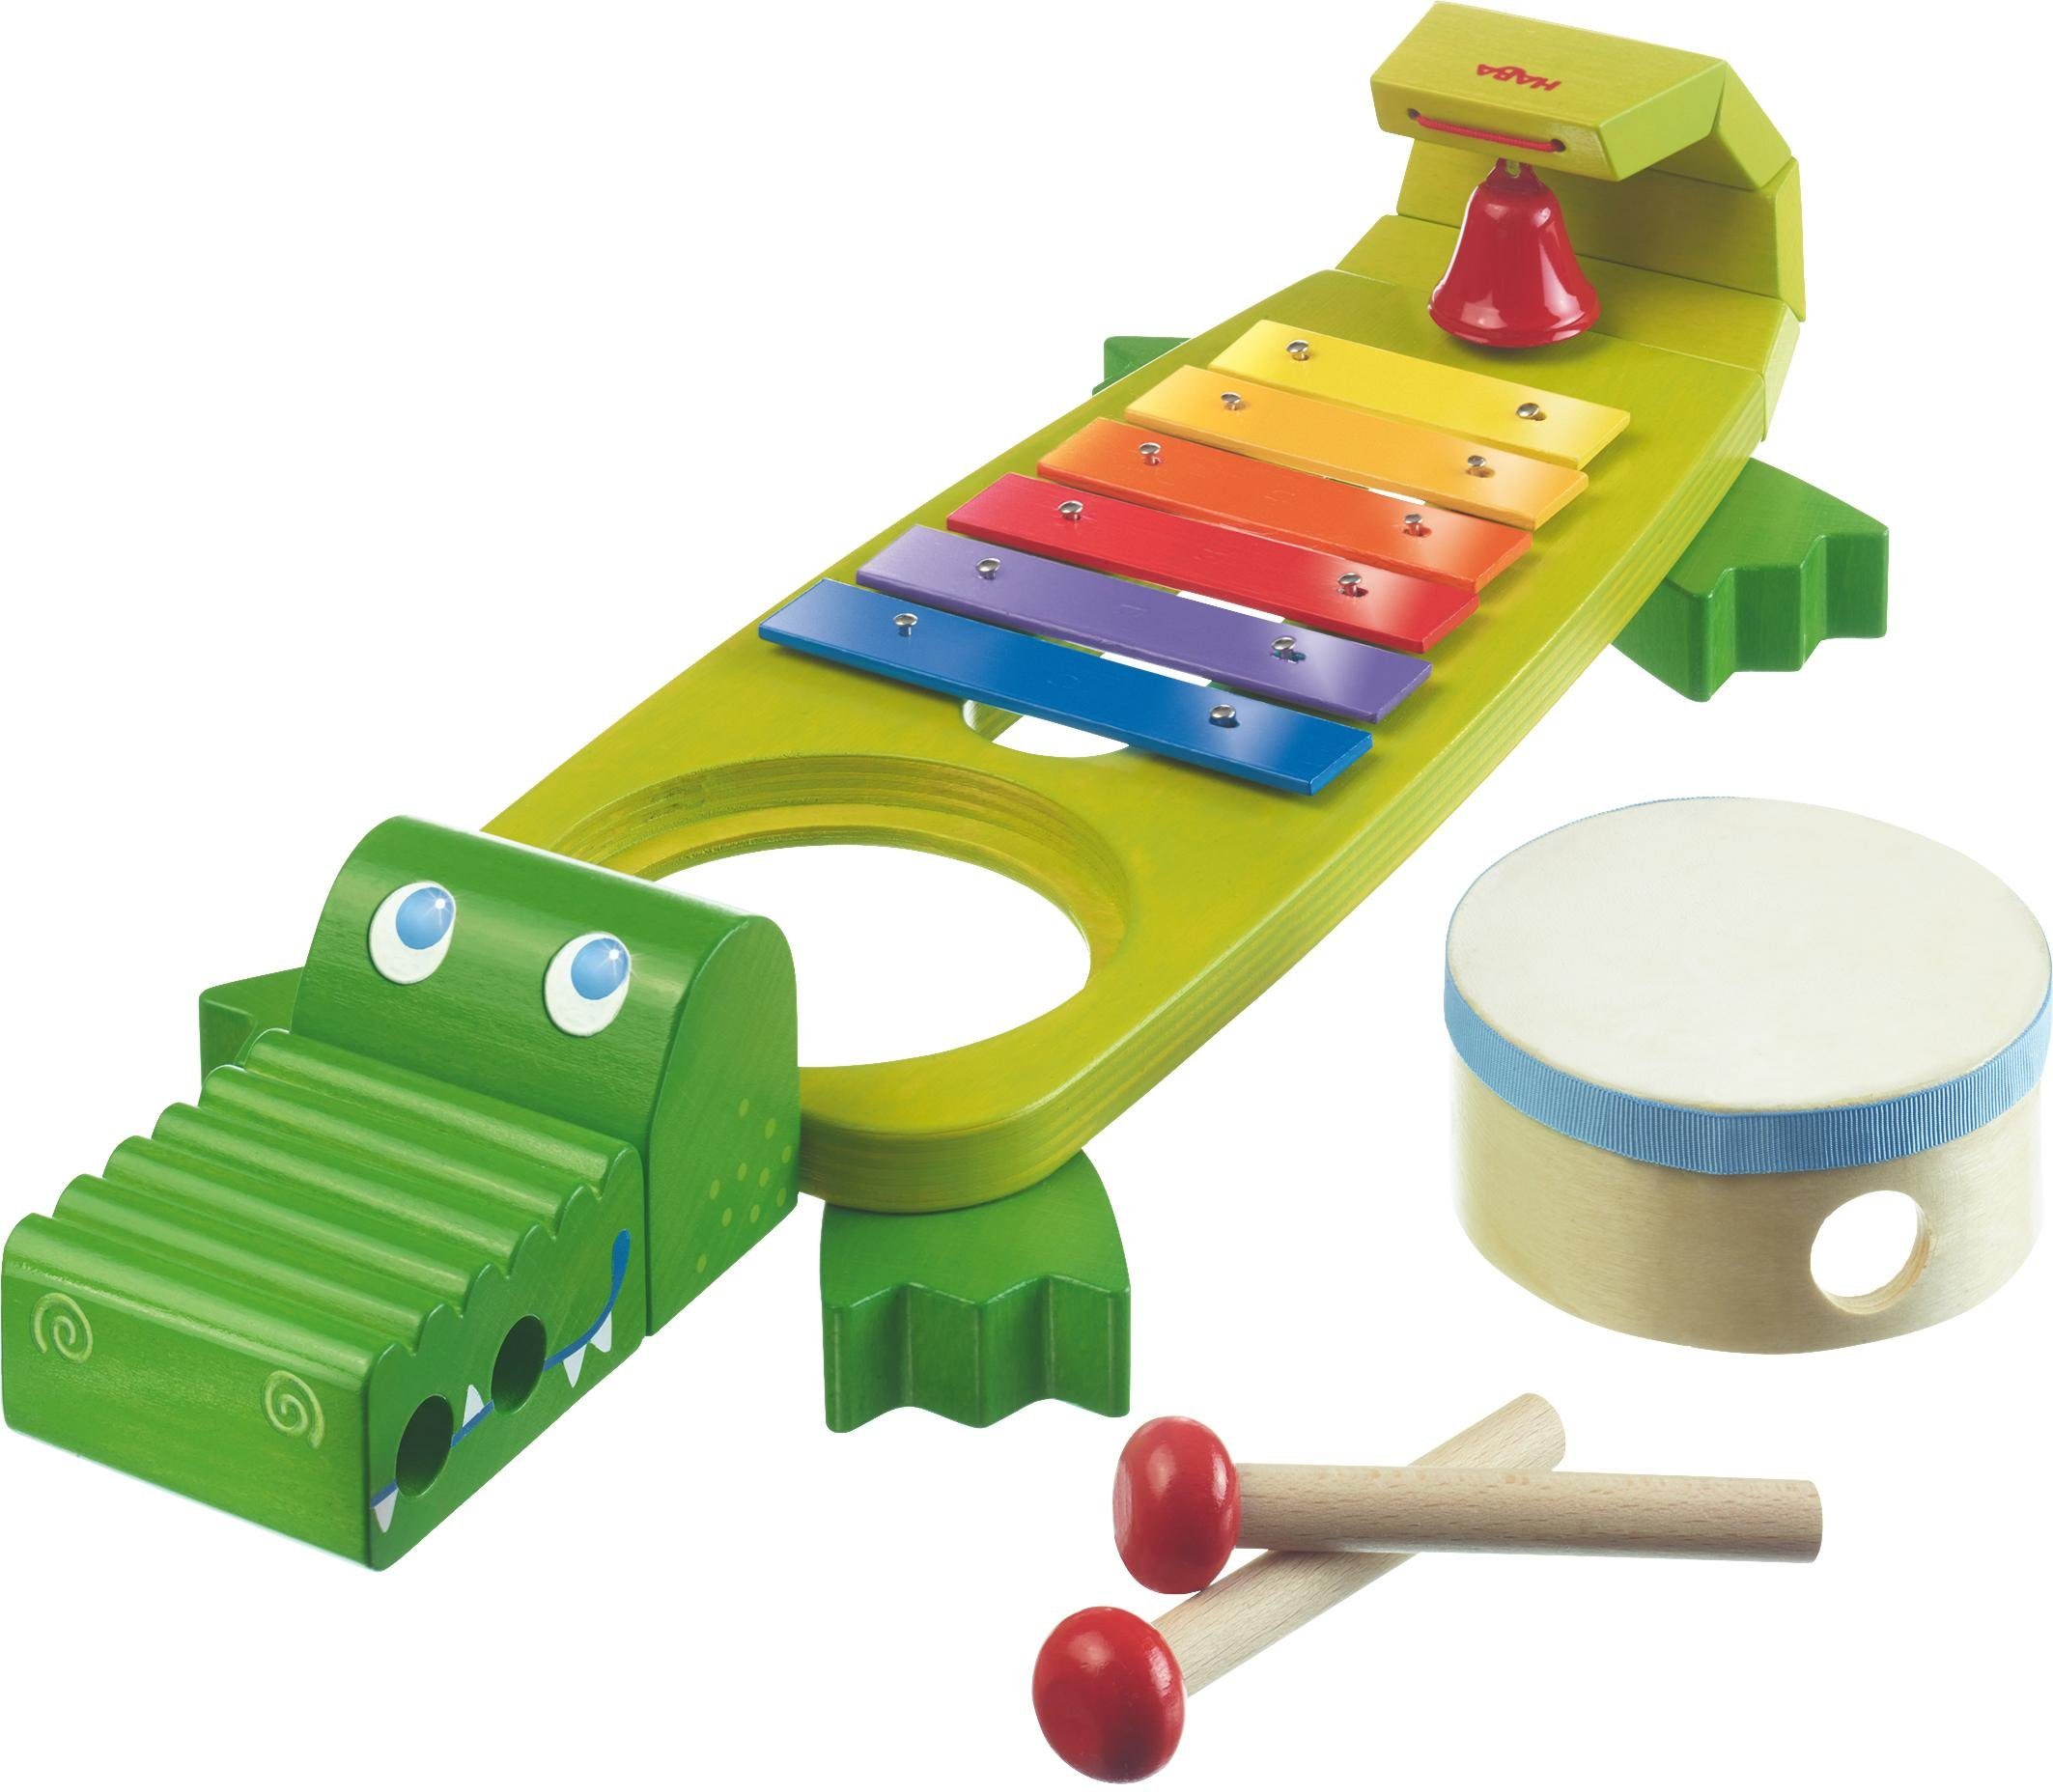 Facet academisch strak Haba Speelgoed-muziekinstrument Muziekkroko makkelijk gevonden | OTTO